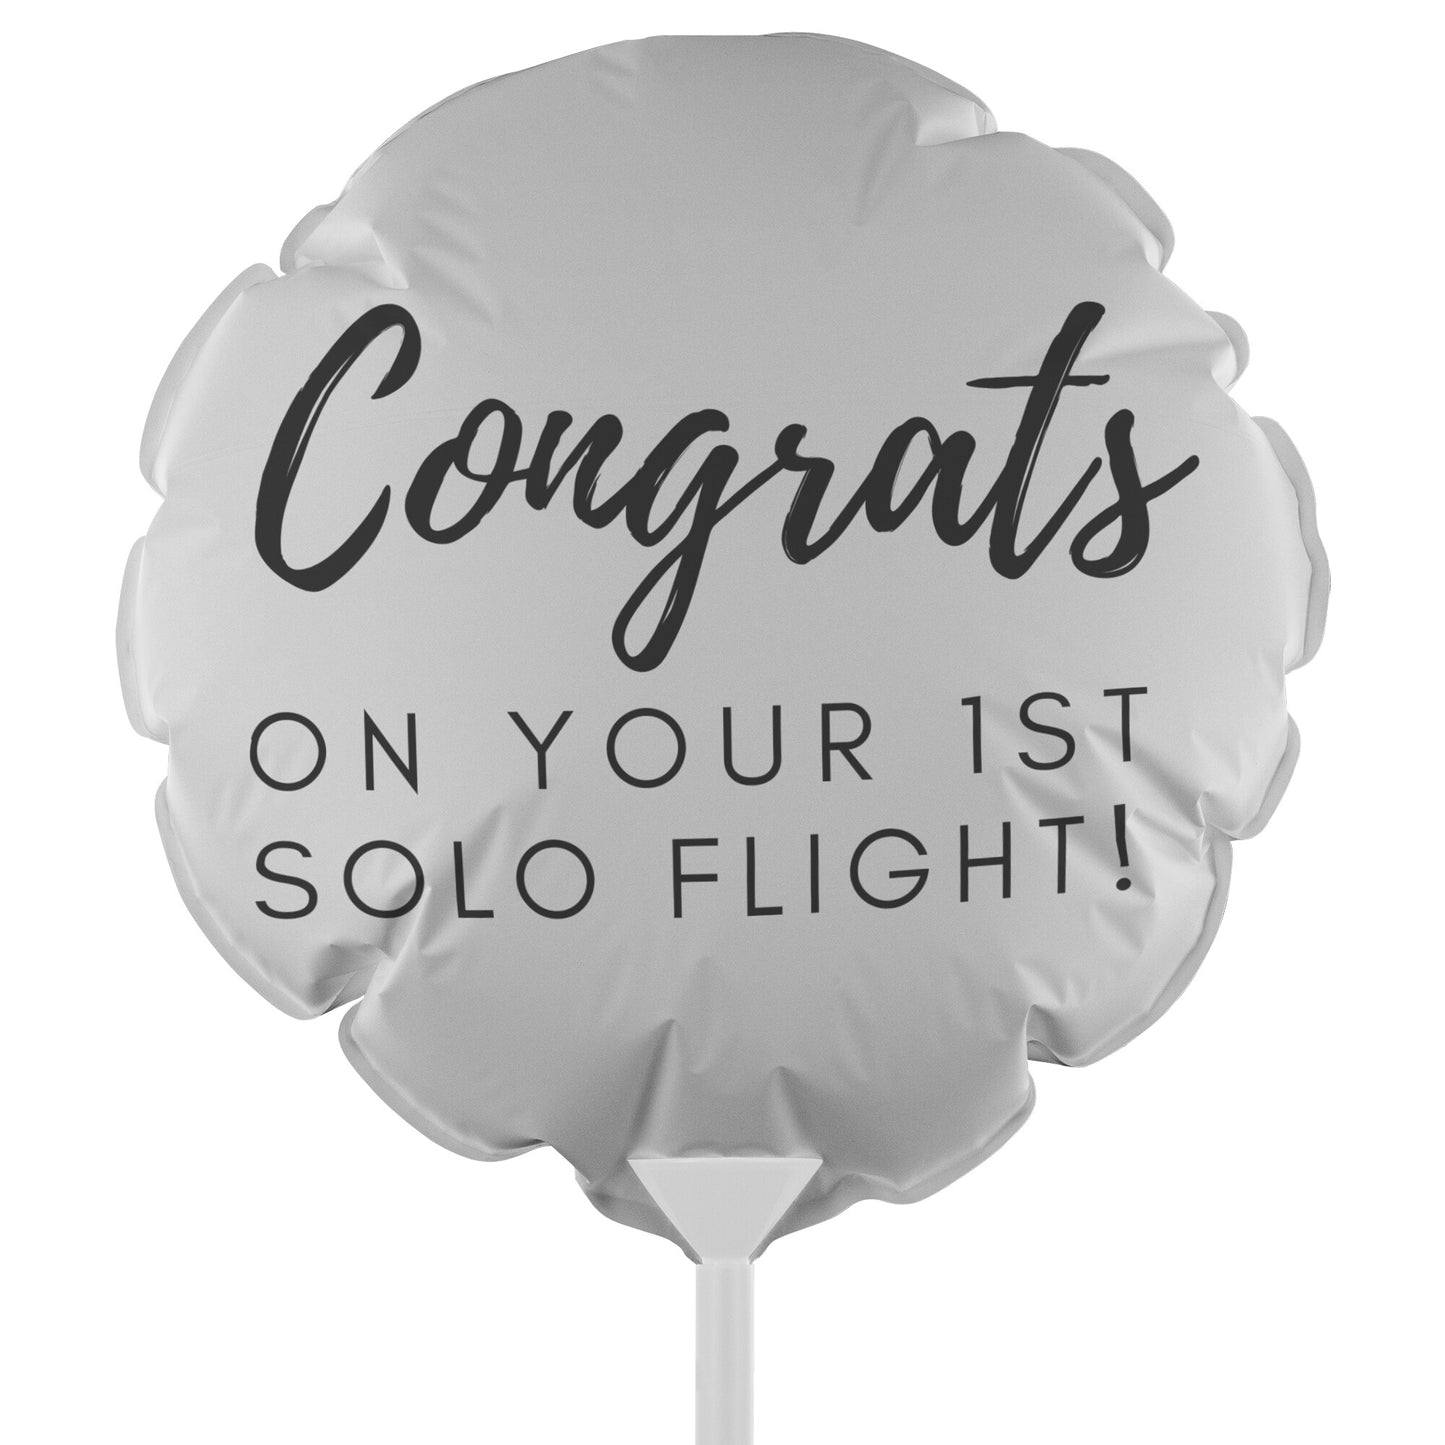 Congrats on your first solo flight! - reusable balloon